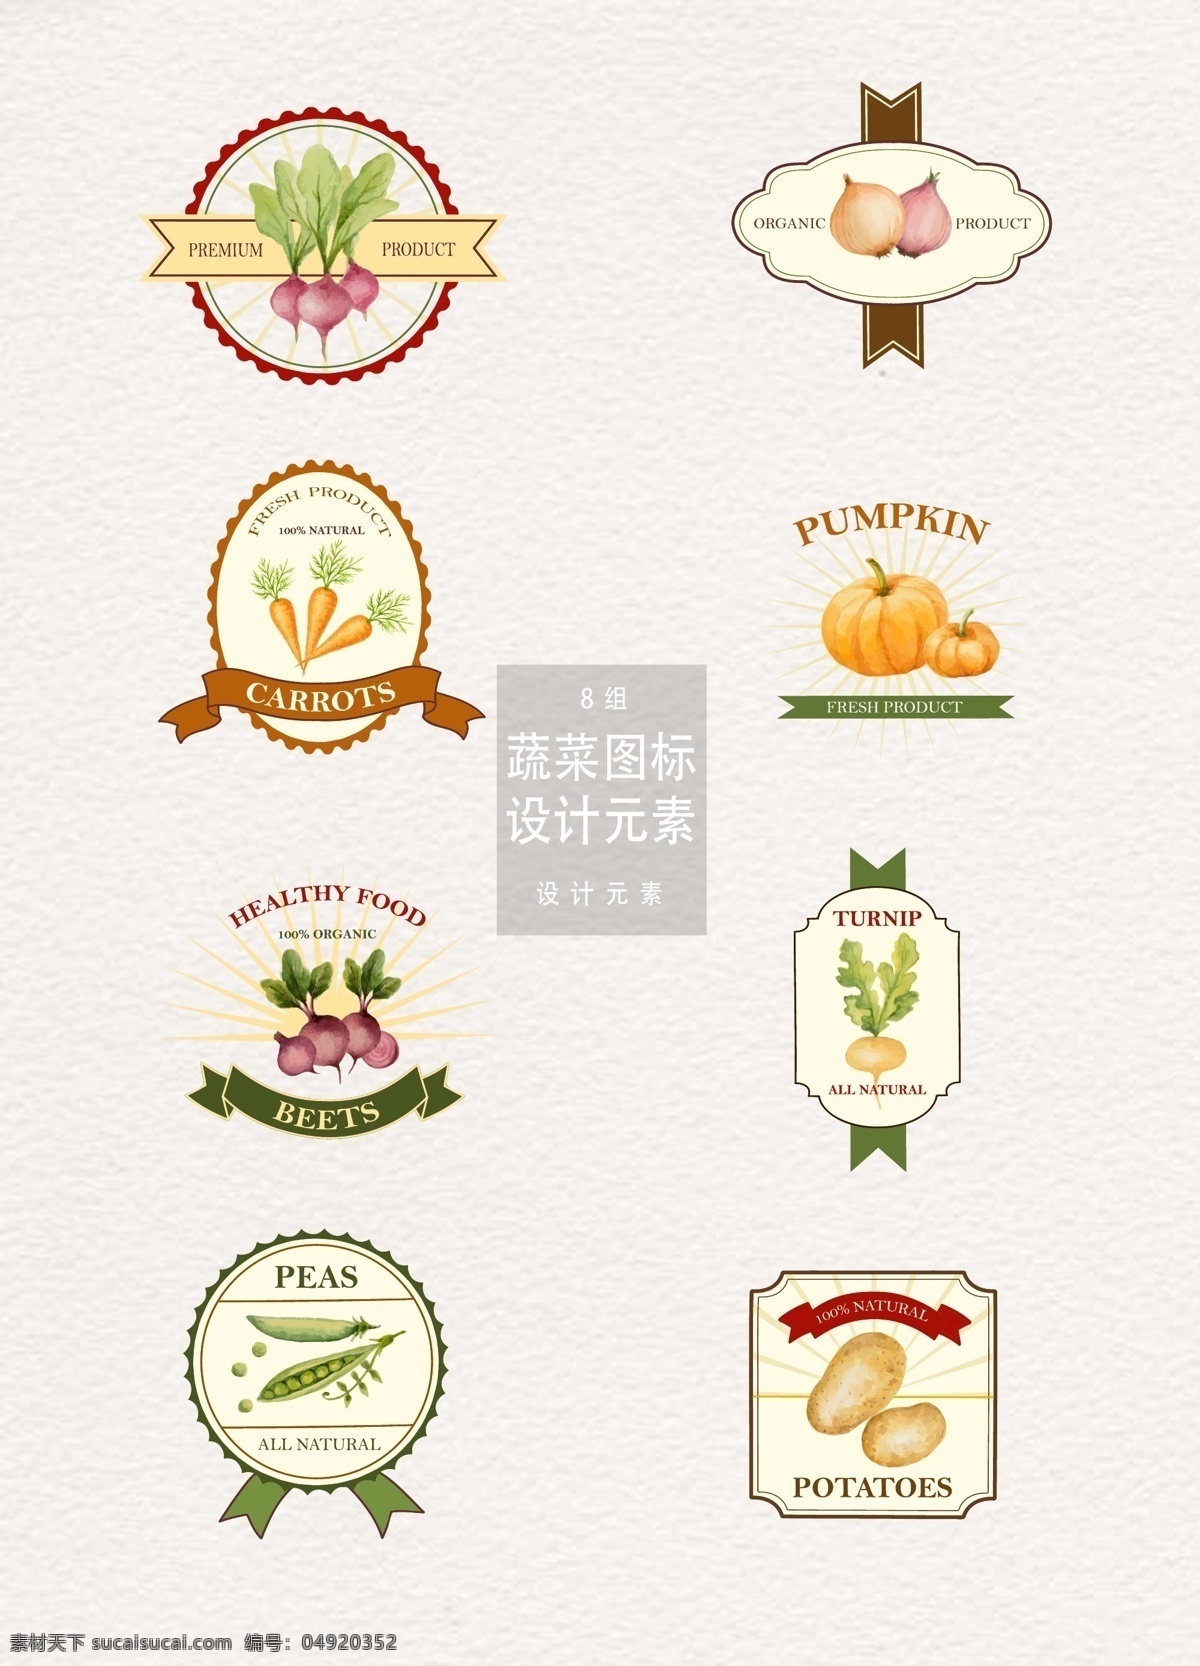 蔬菜 图标 logo 元素 设计元素 南瓜 土豆 蔬菜图标 蔬菜logo 萝卜 洋葱